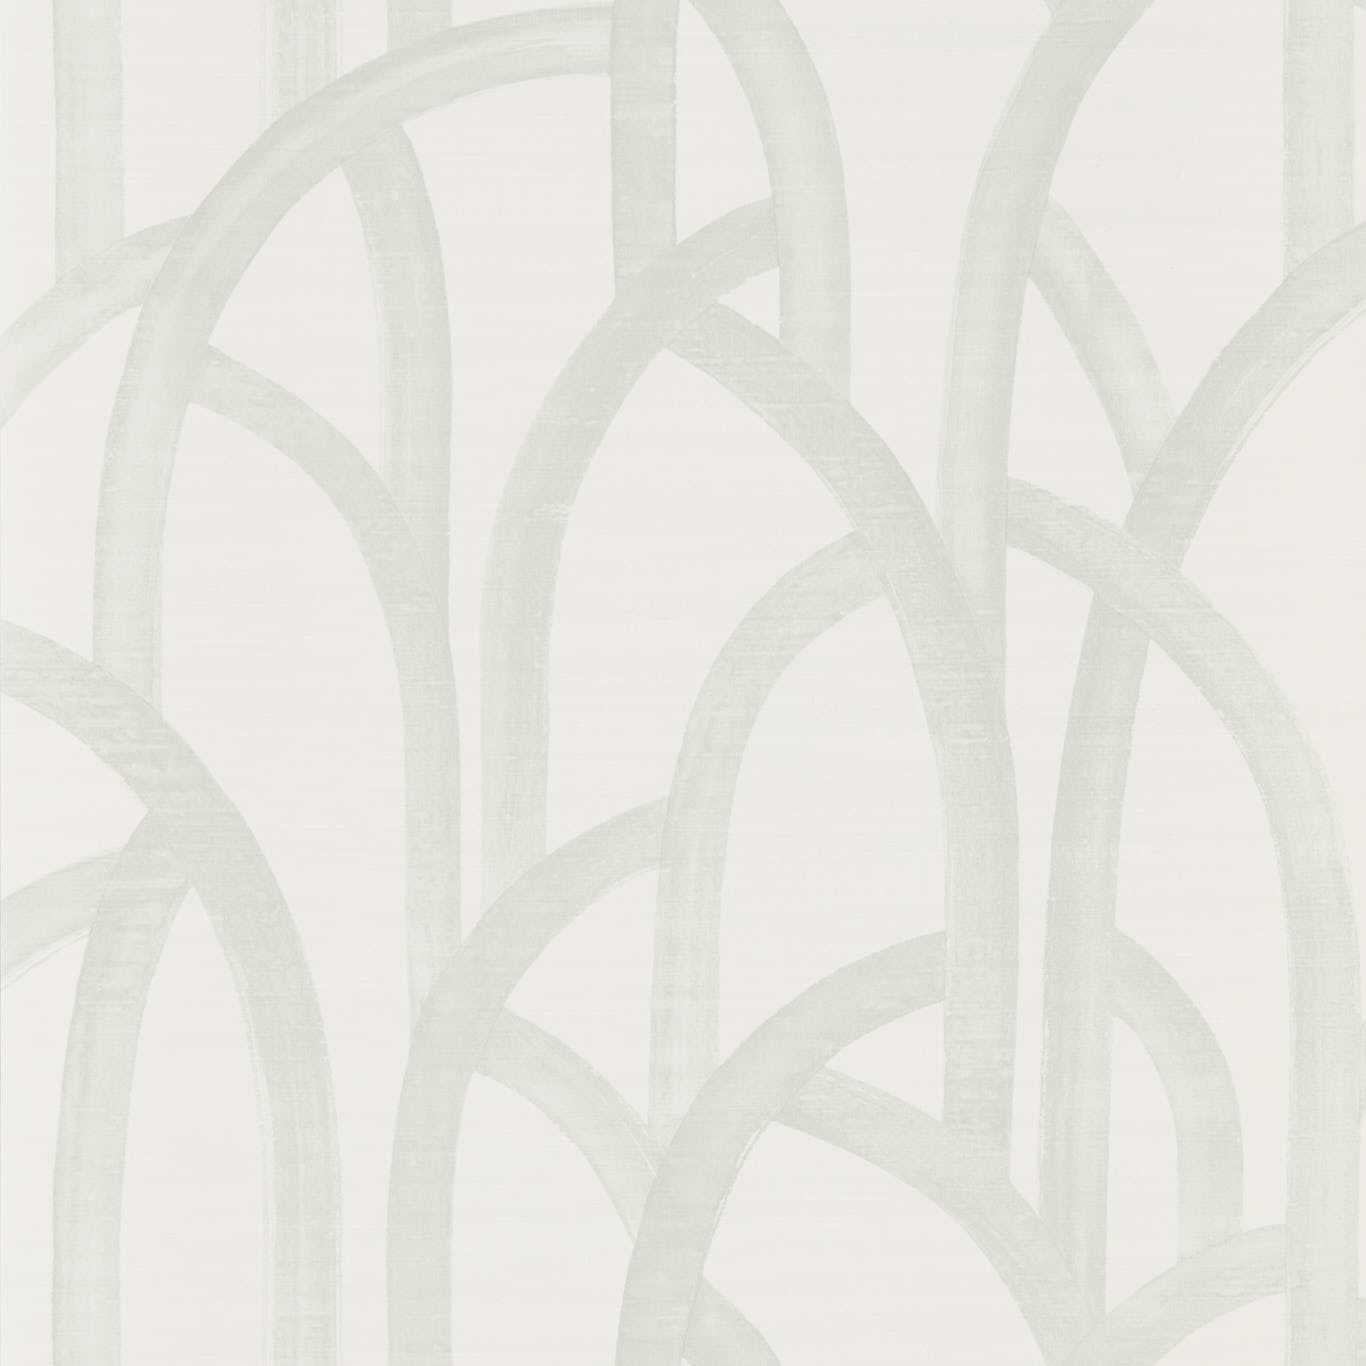 Meso Dove Wallpaper HMFW111581 by Harlequin